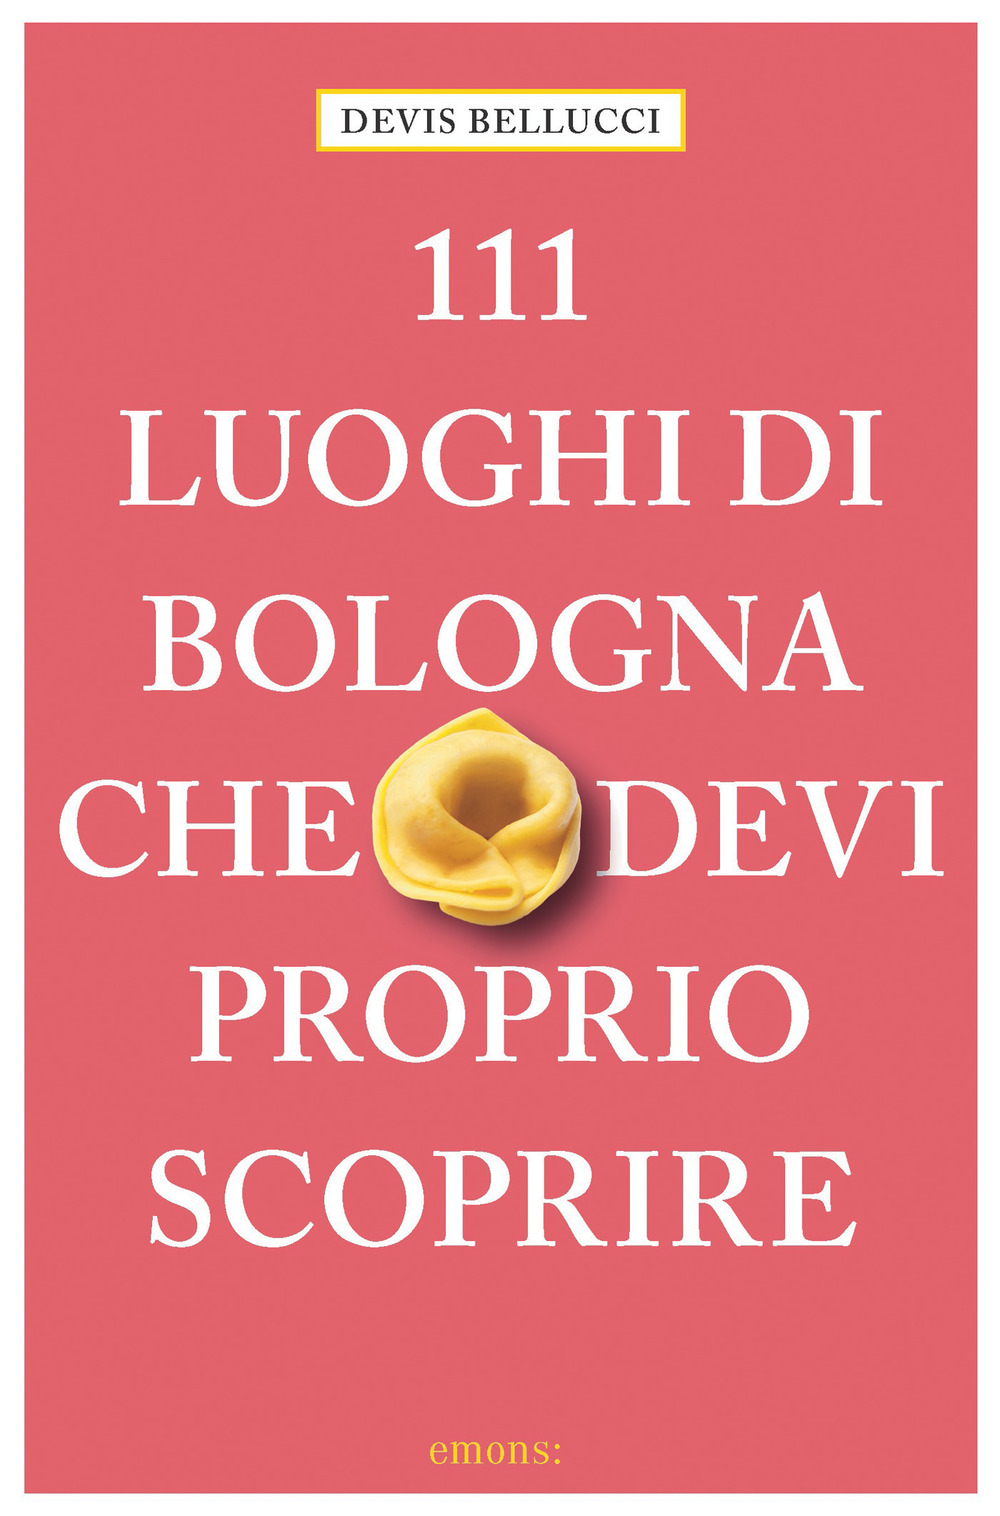 111 LUOGHI DI BOLOGNA CHE DEVI PROPRIO SCOPRIRE - Bellucci Devis - 9783740811068